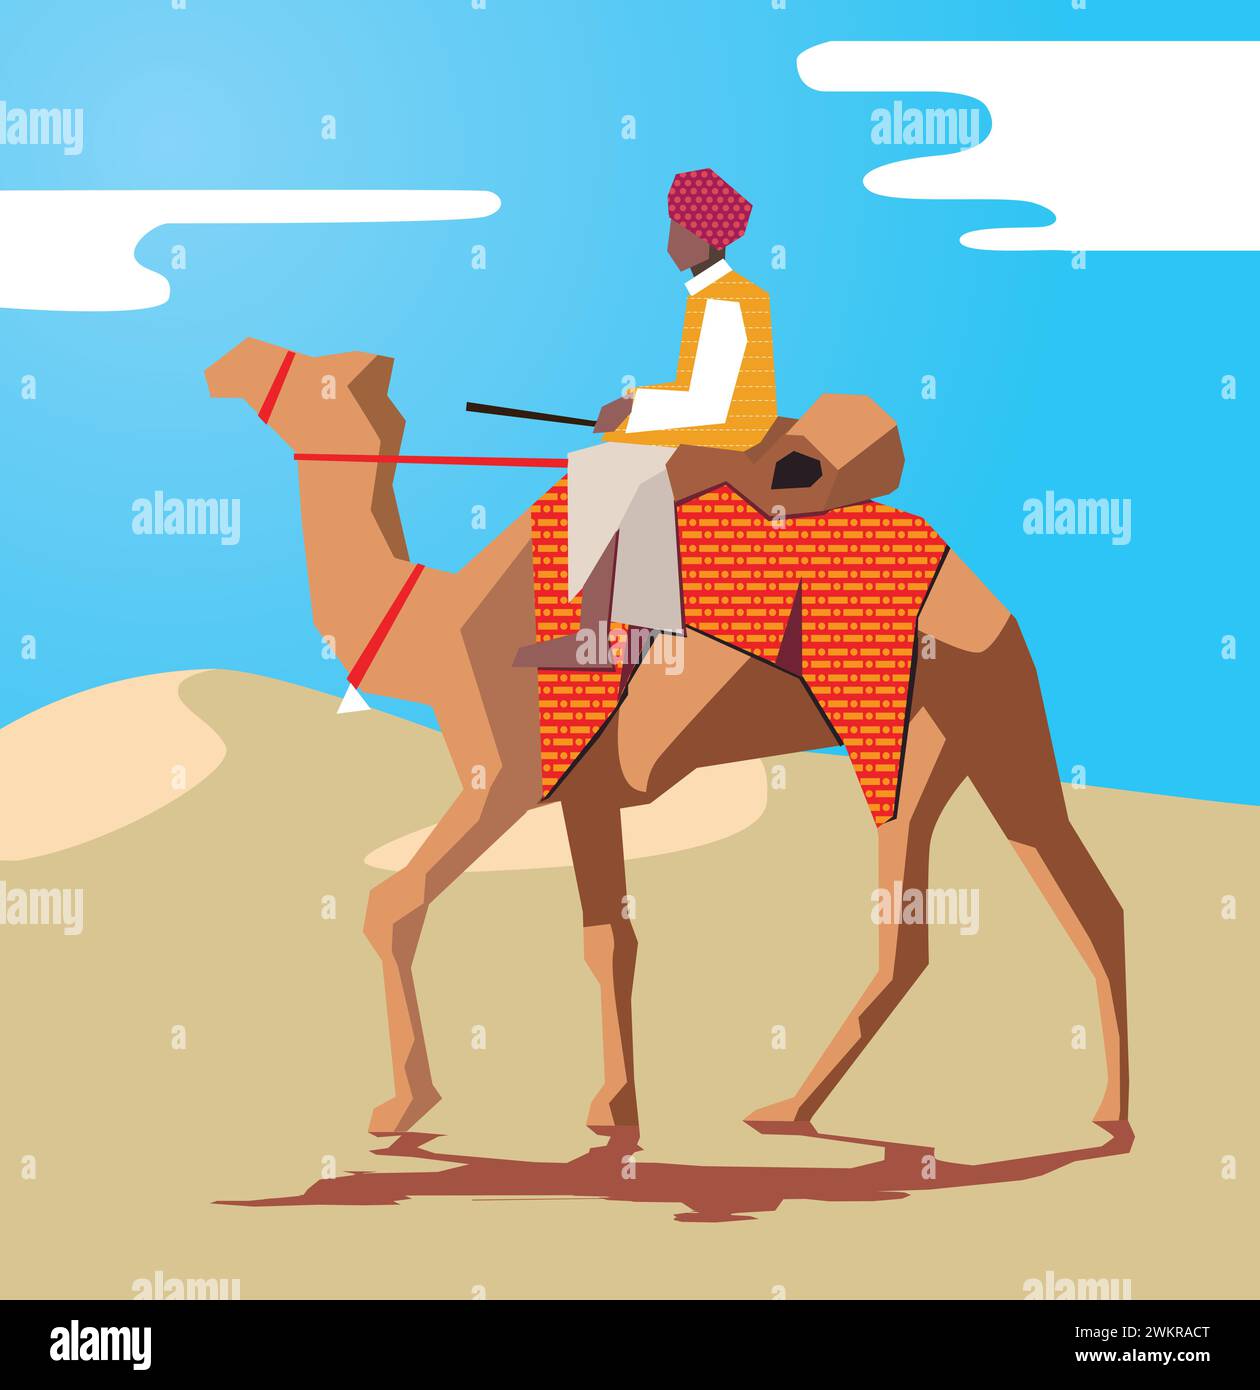 Homme indien rajasthani sur le tour de chameau dans le désert illustration vectorielle libre de droits Illustration de Vecteur